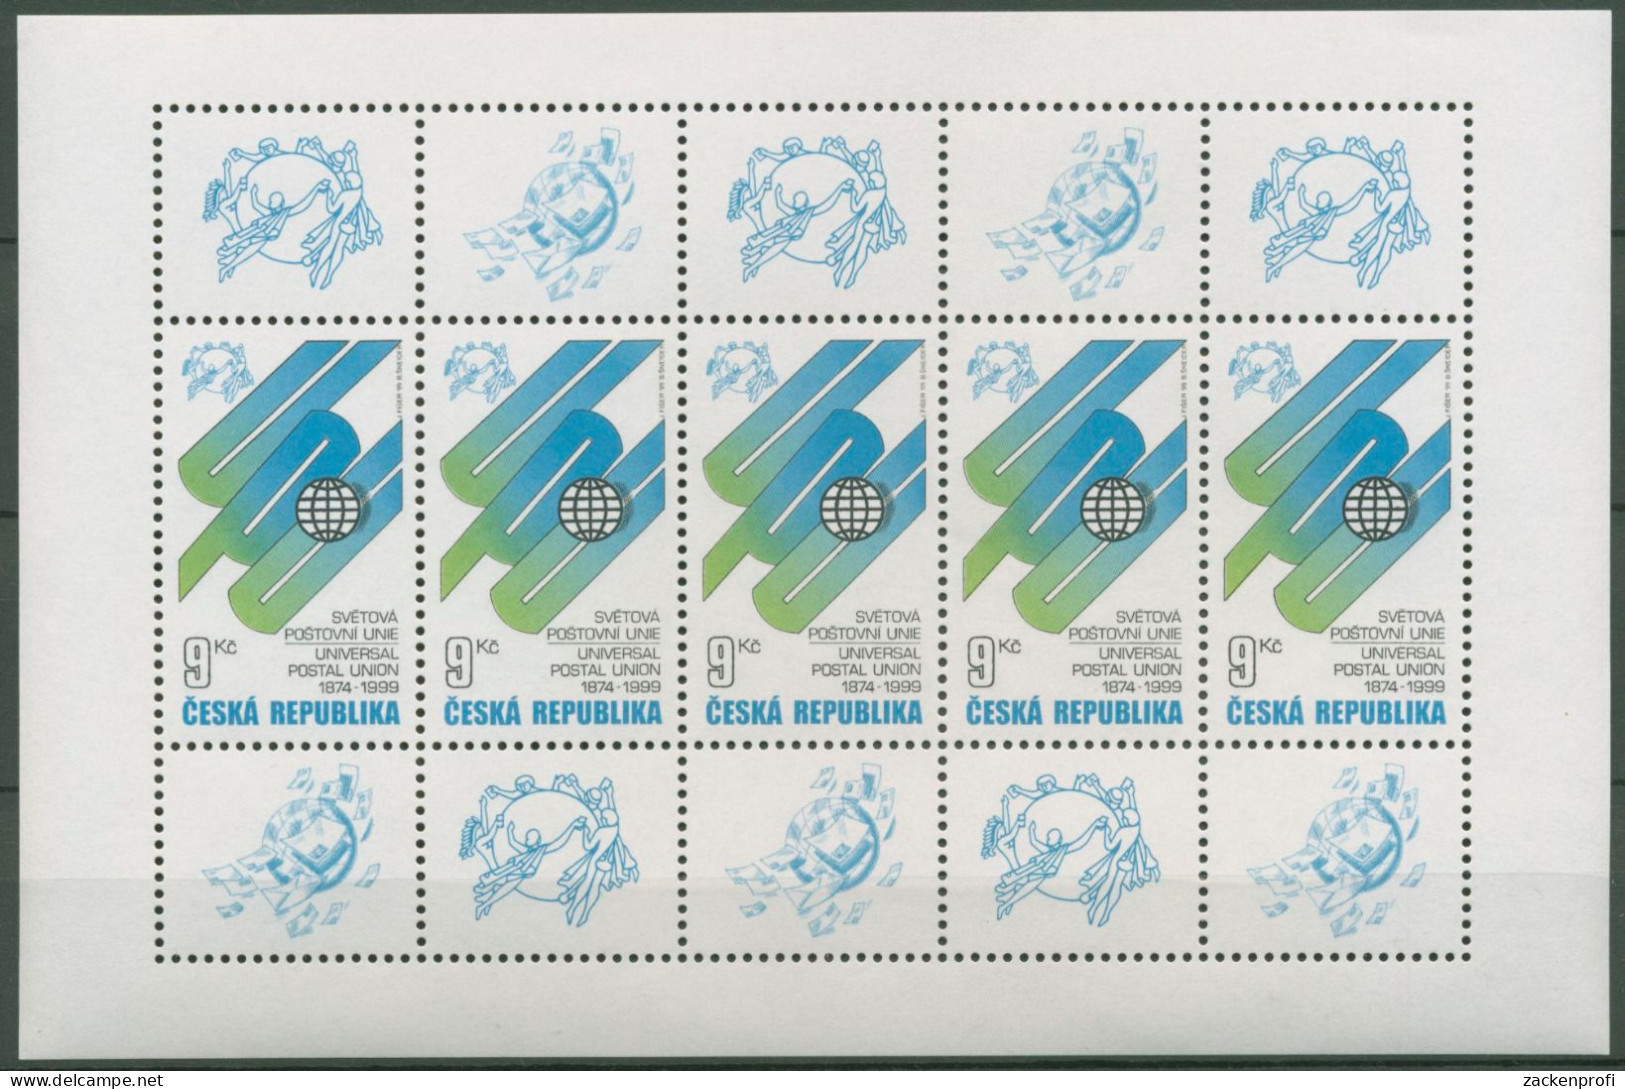 Tschechische Republik 1999 Weltpostverein UPU 224 K Postfrisch (C62769) - Blocks & Kleinbögen